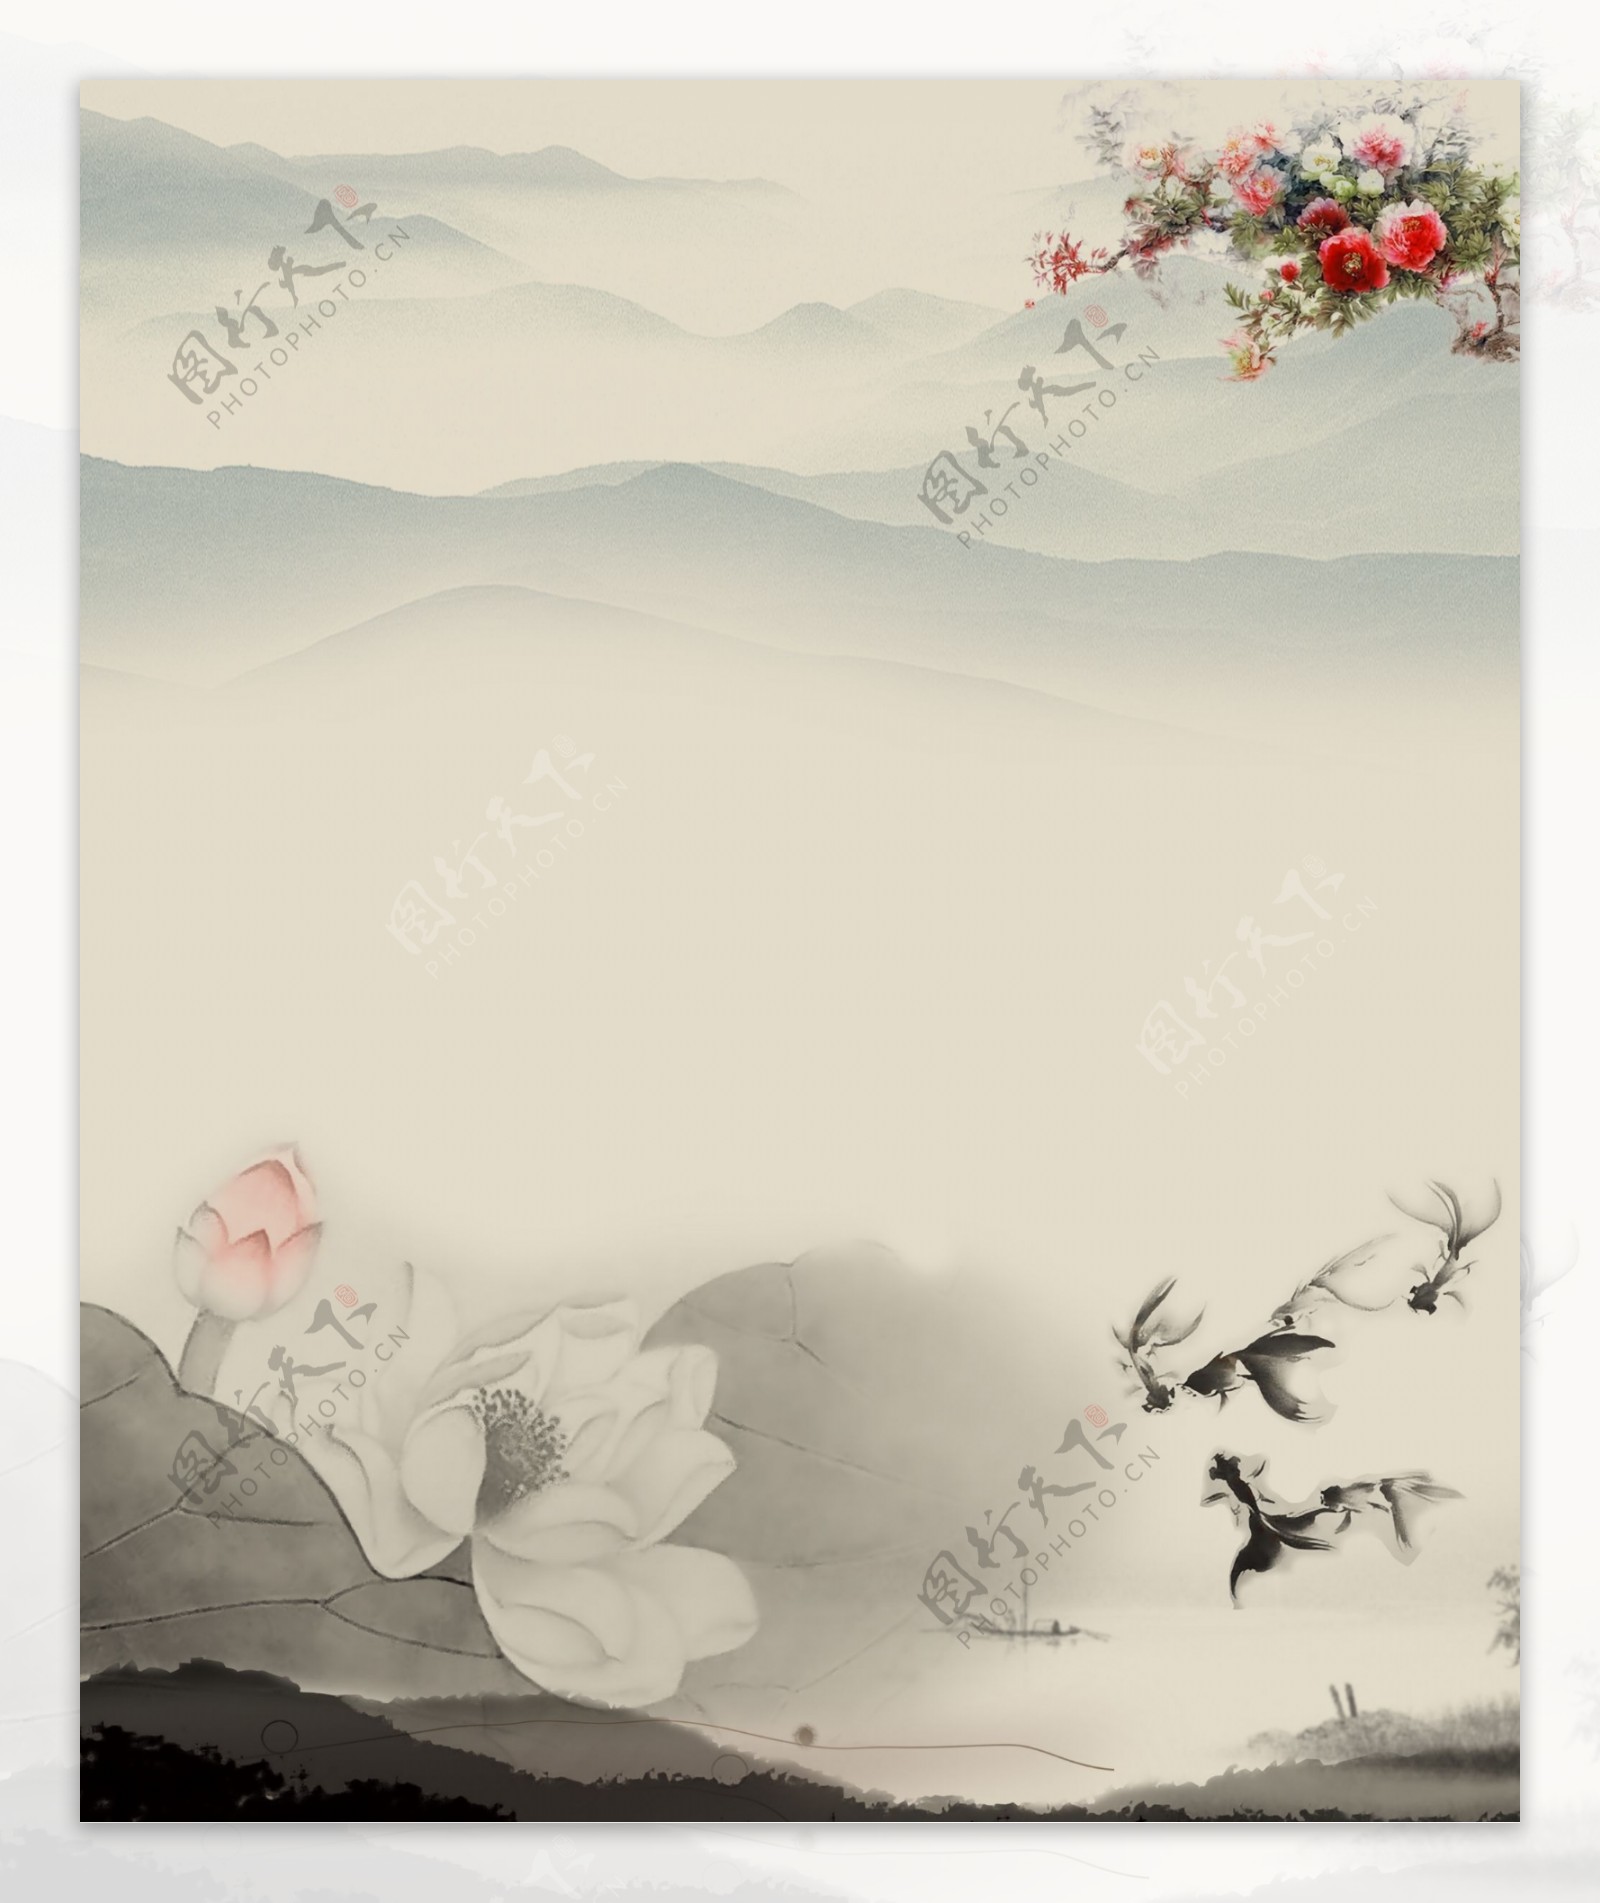 中国风山水水墨图片